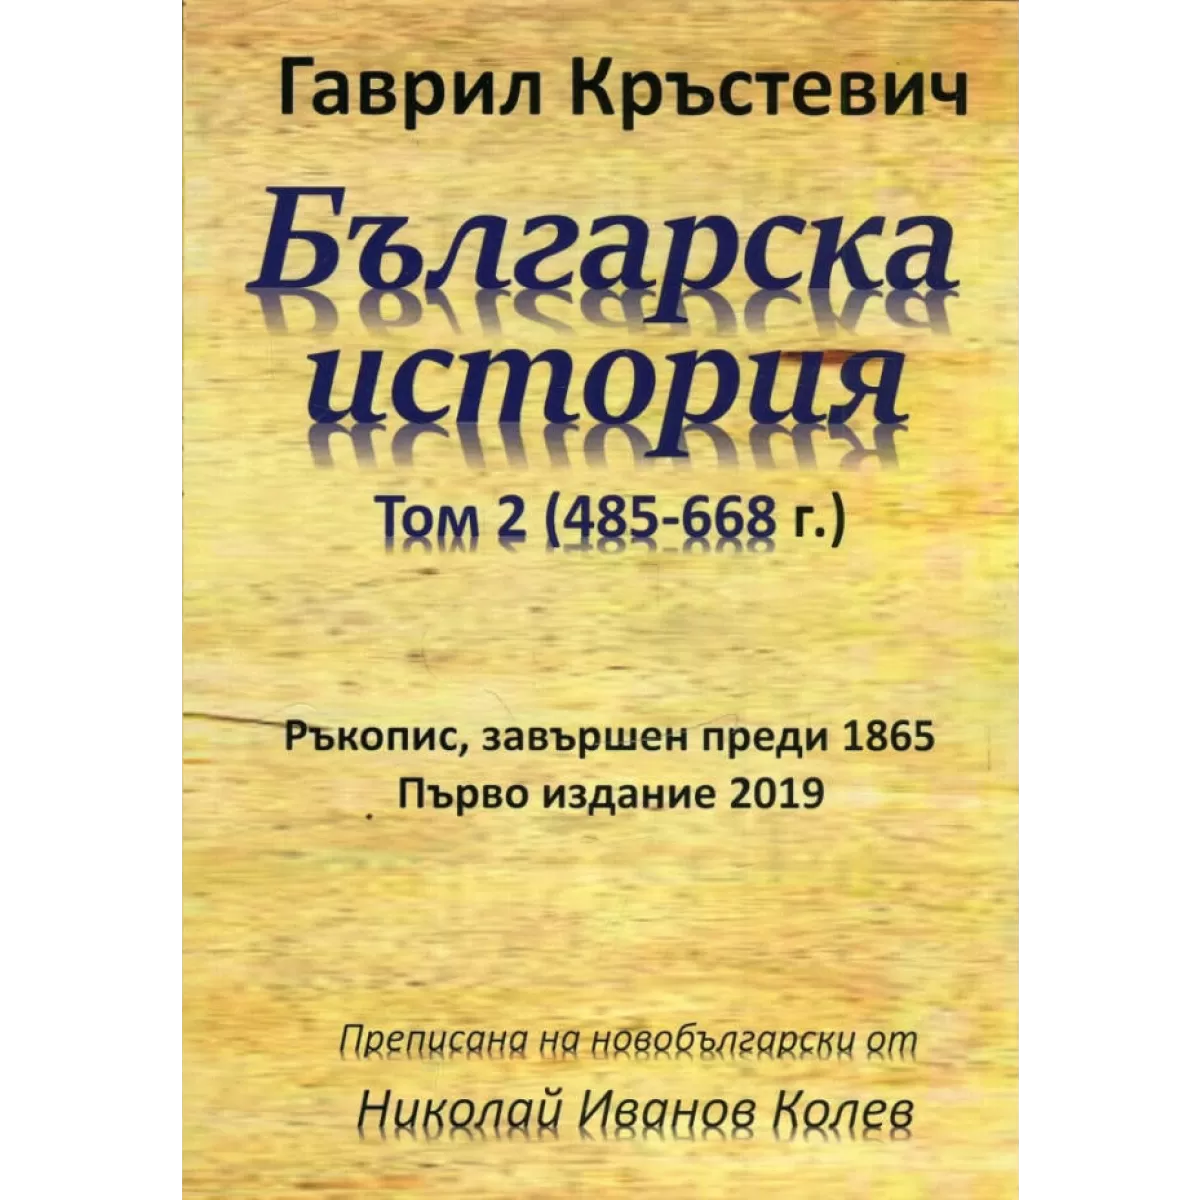 Българска история, Том 2 (485-668 г.)